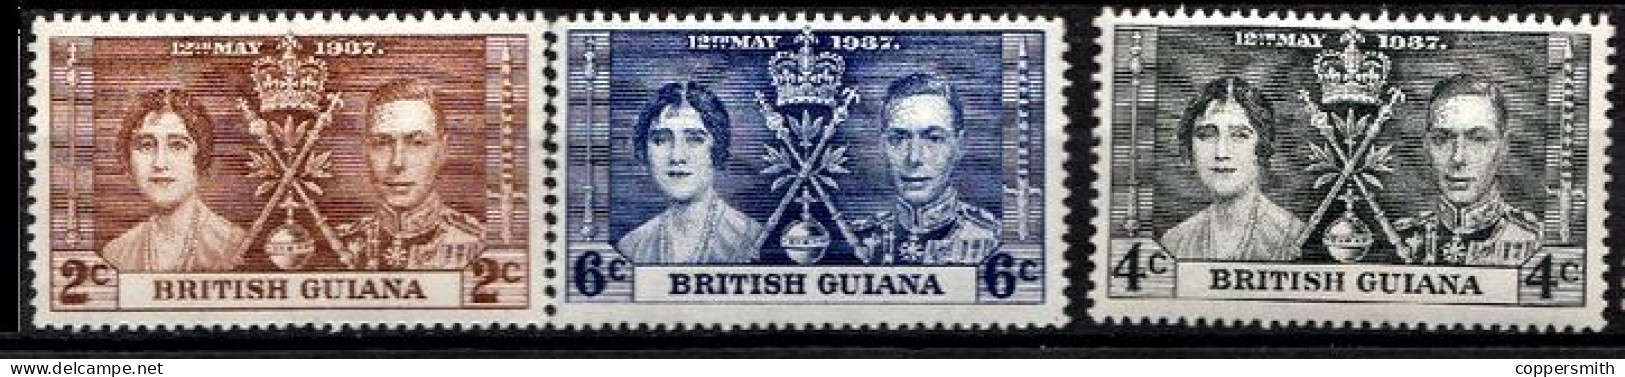 (018) Guyana / Guyane  Coronation / Krönung / 1937  ** / Mnh  Michel 173-175 - Guyana (1966-...)